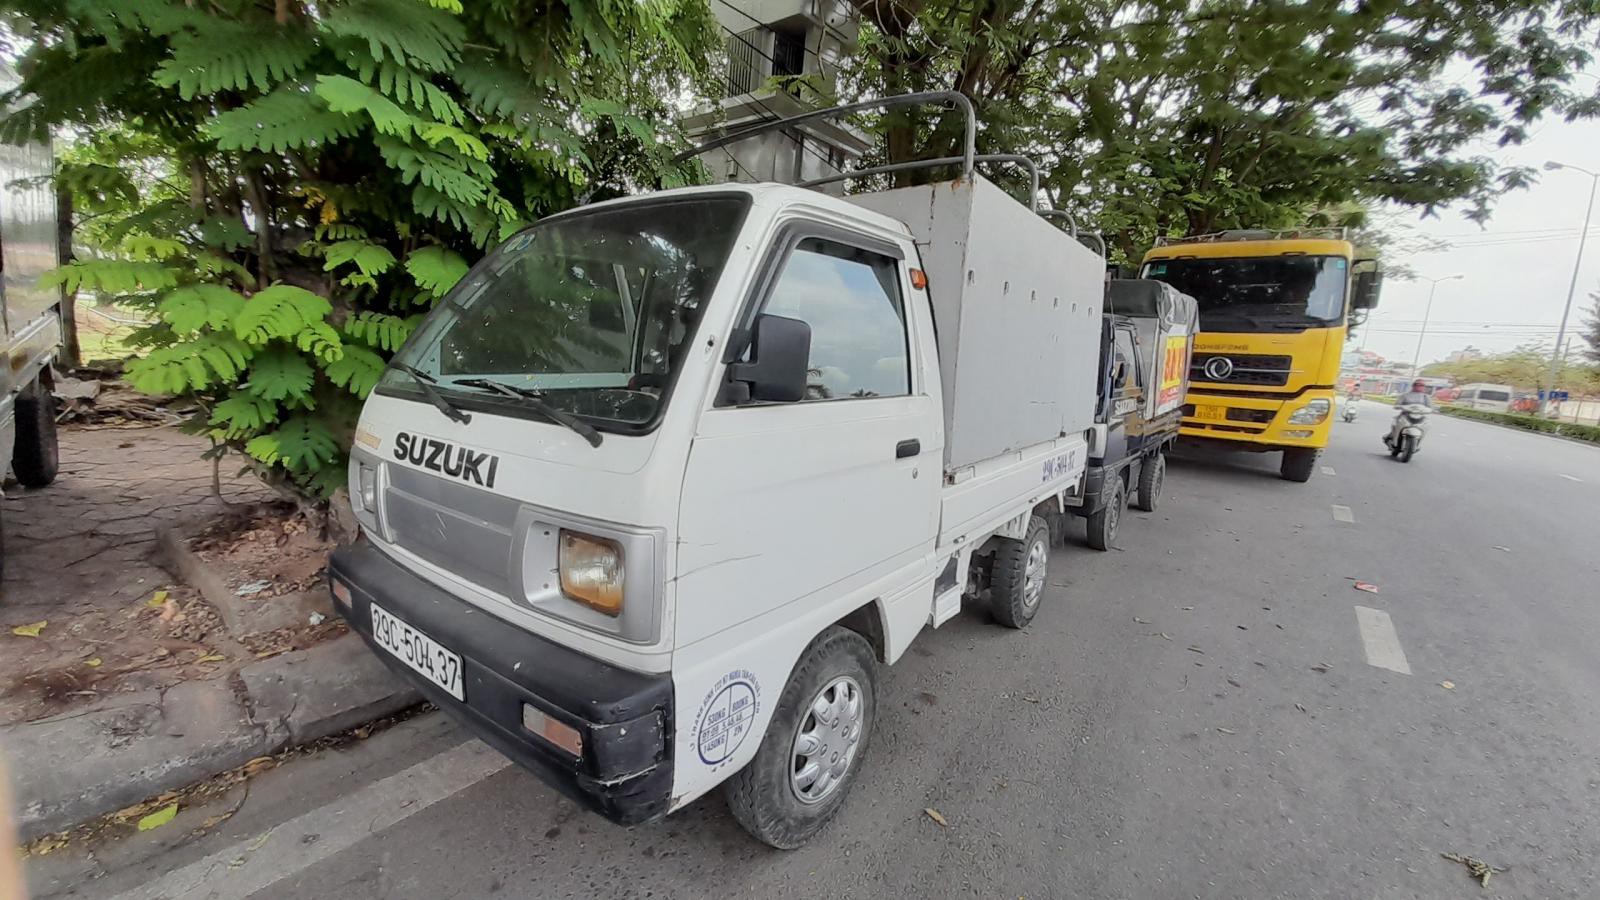 Bán xe tải Suzuki 5 tạ cũ thùng bạt đời 2009 tại Hải Phòng lh 090.605.3322